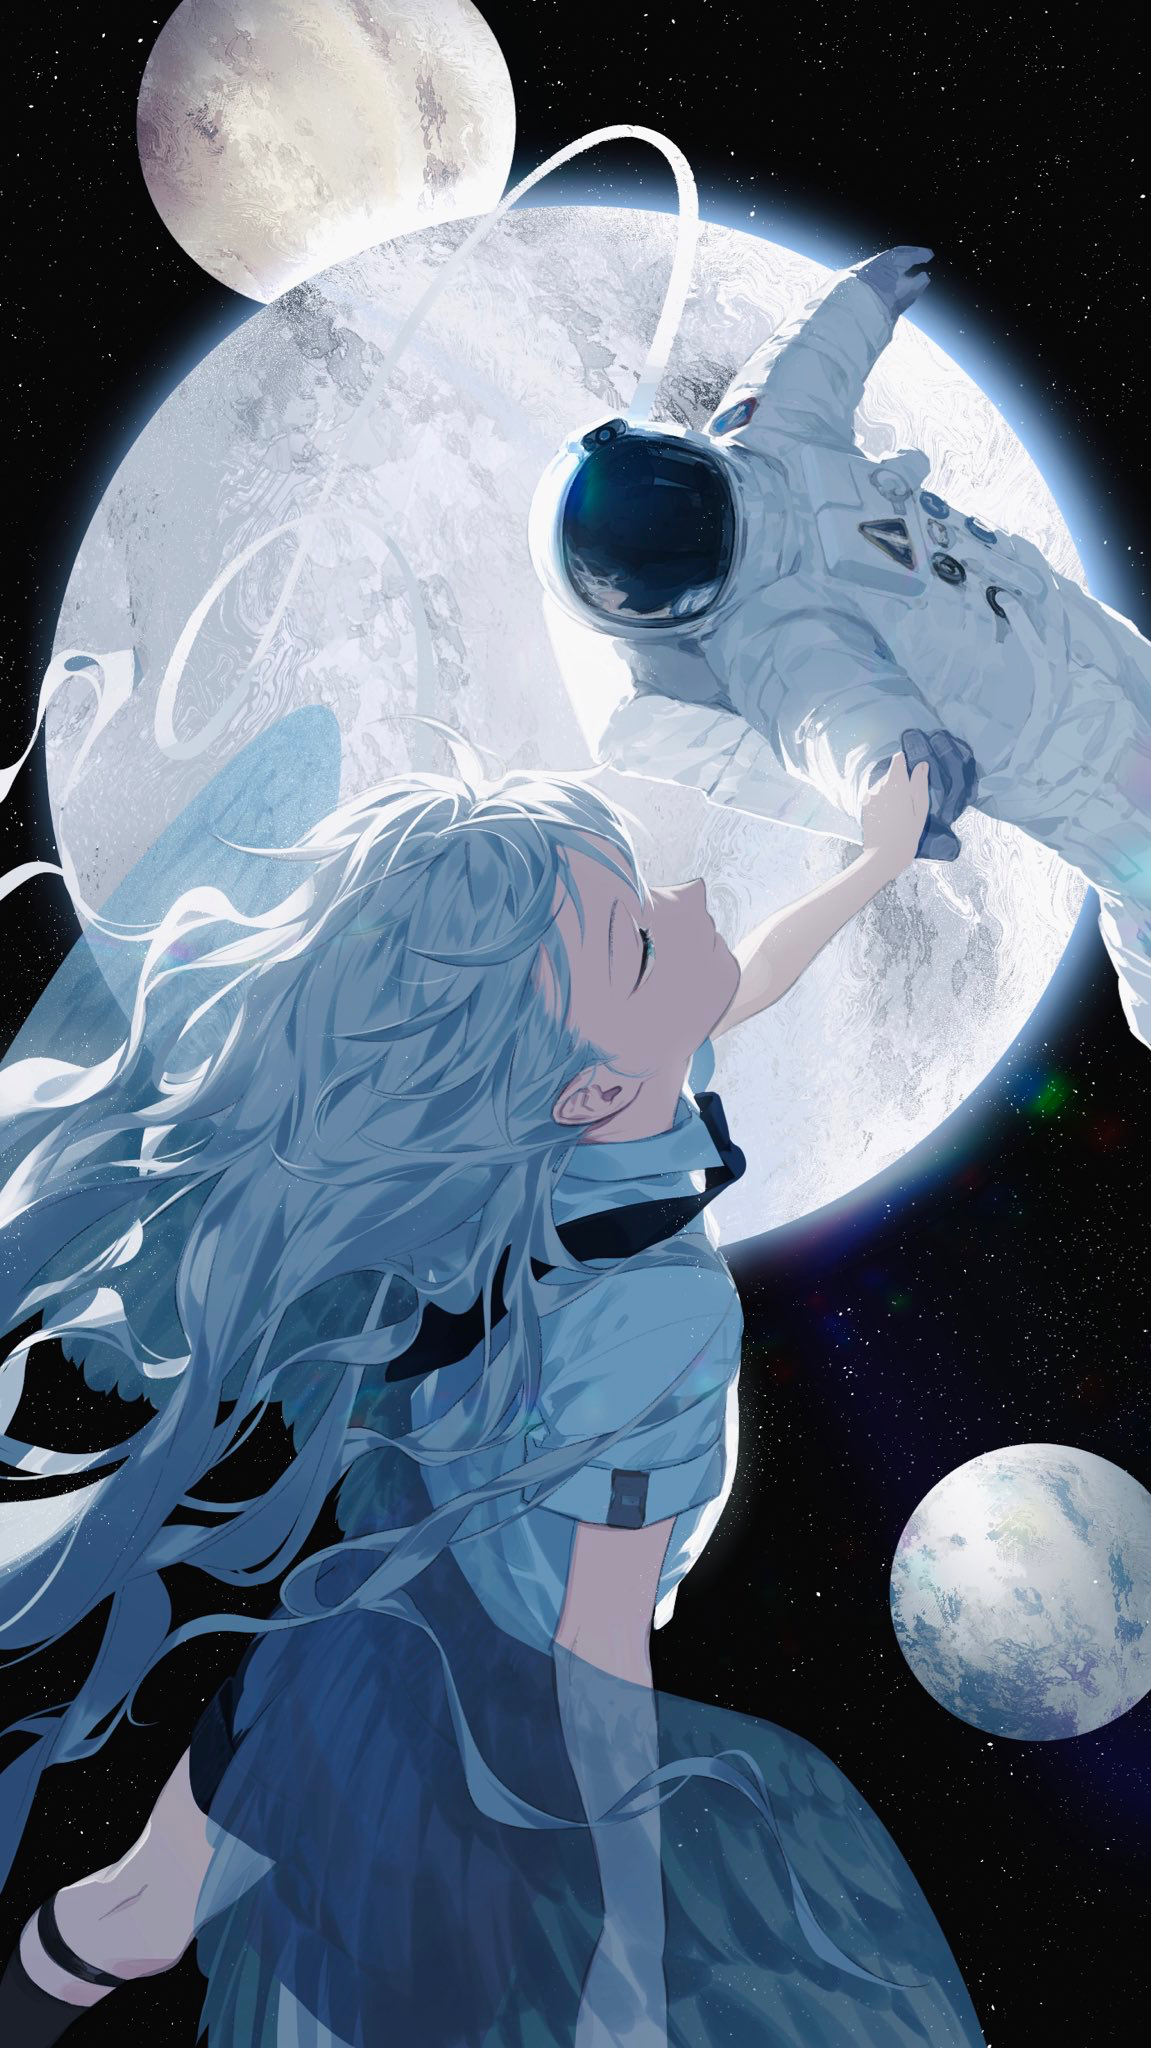 Sexy Anime Girl Astronaut Exploring Space - Anime Girl - Pin | TeePublic